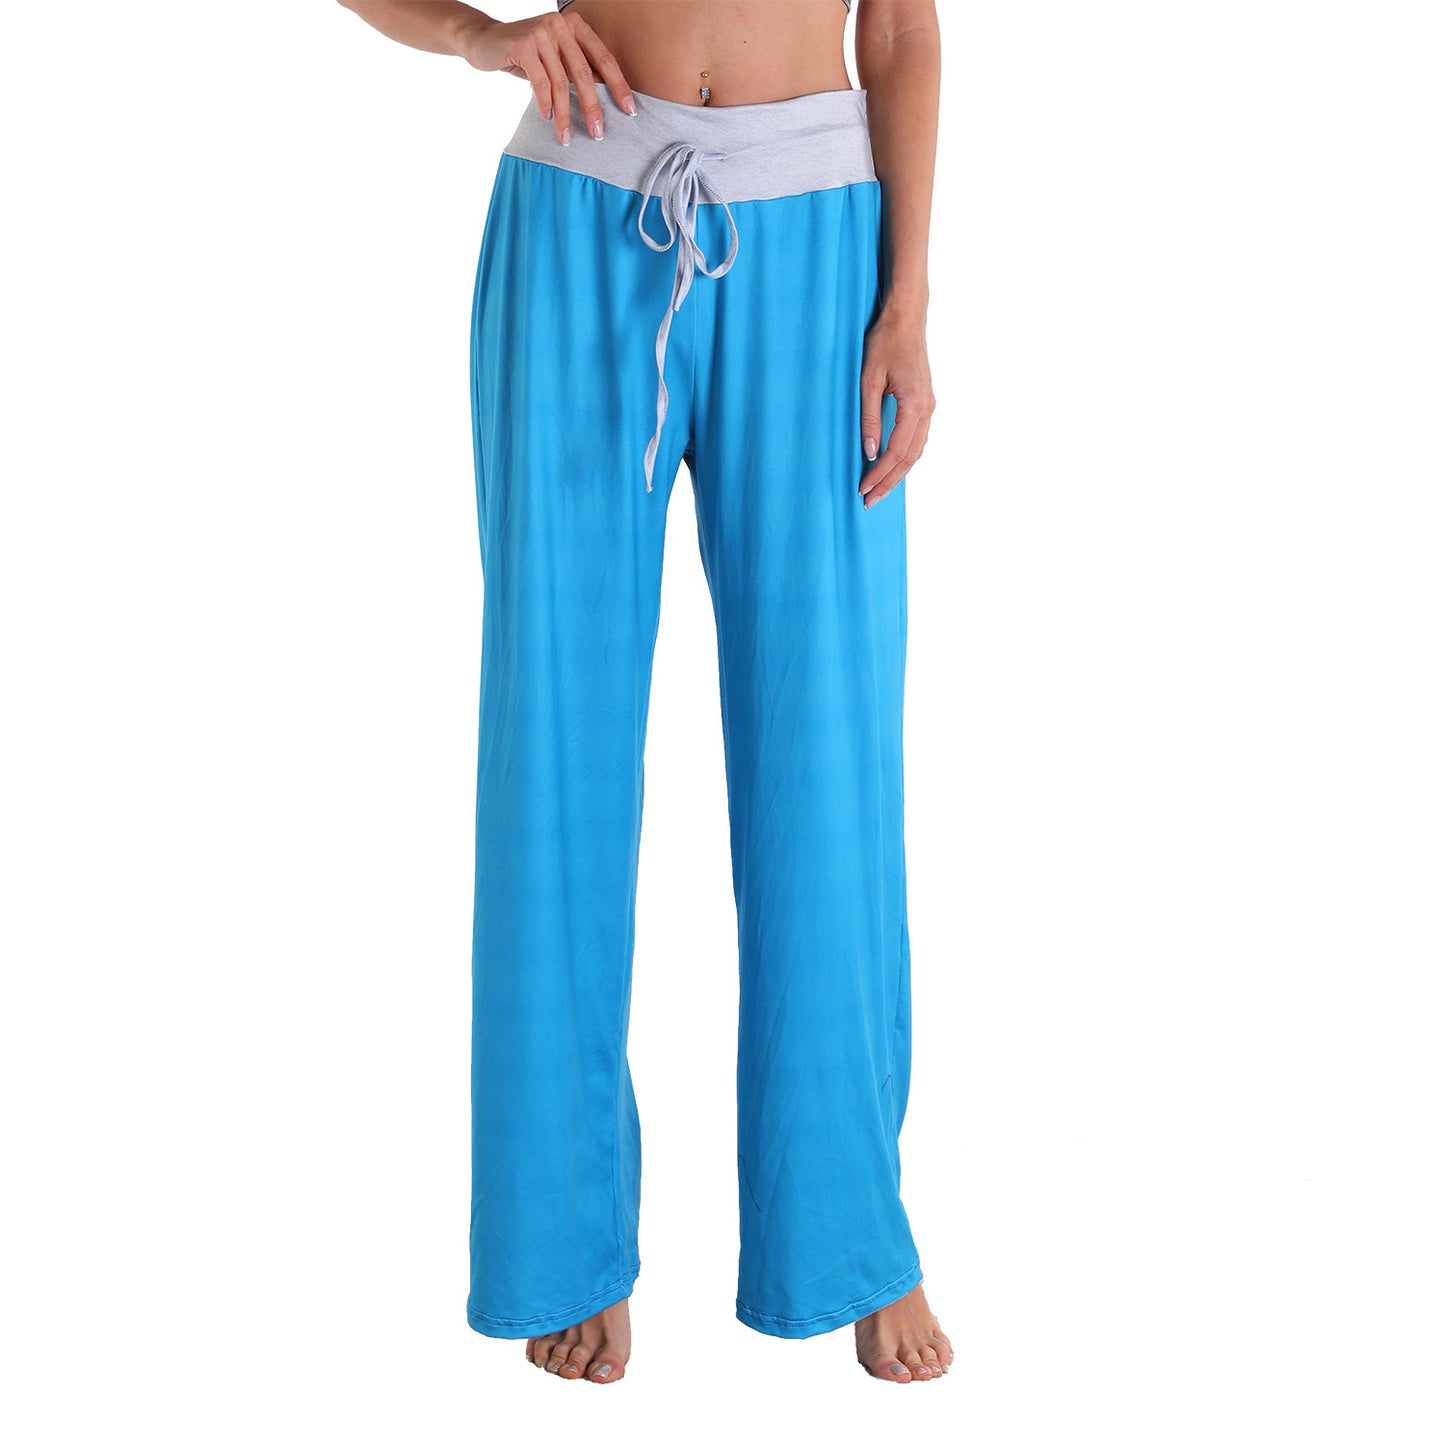 Casual Bandage Solid Loose Home Wear Pajamas Pants-Pajamas-2019-S-Free Shipping at meselling99